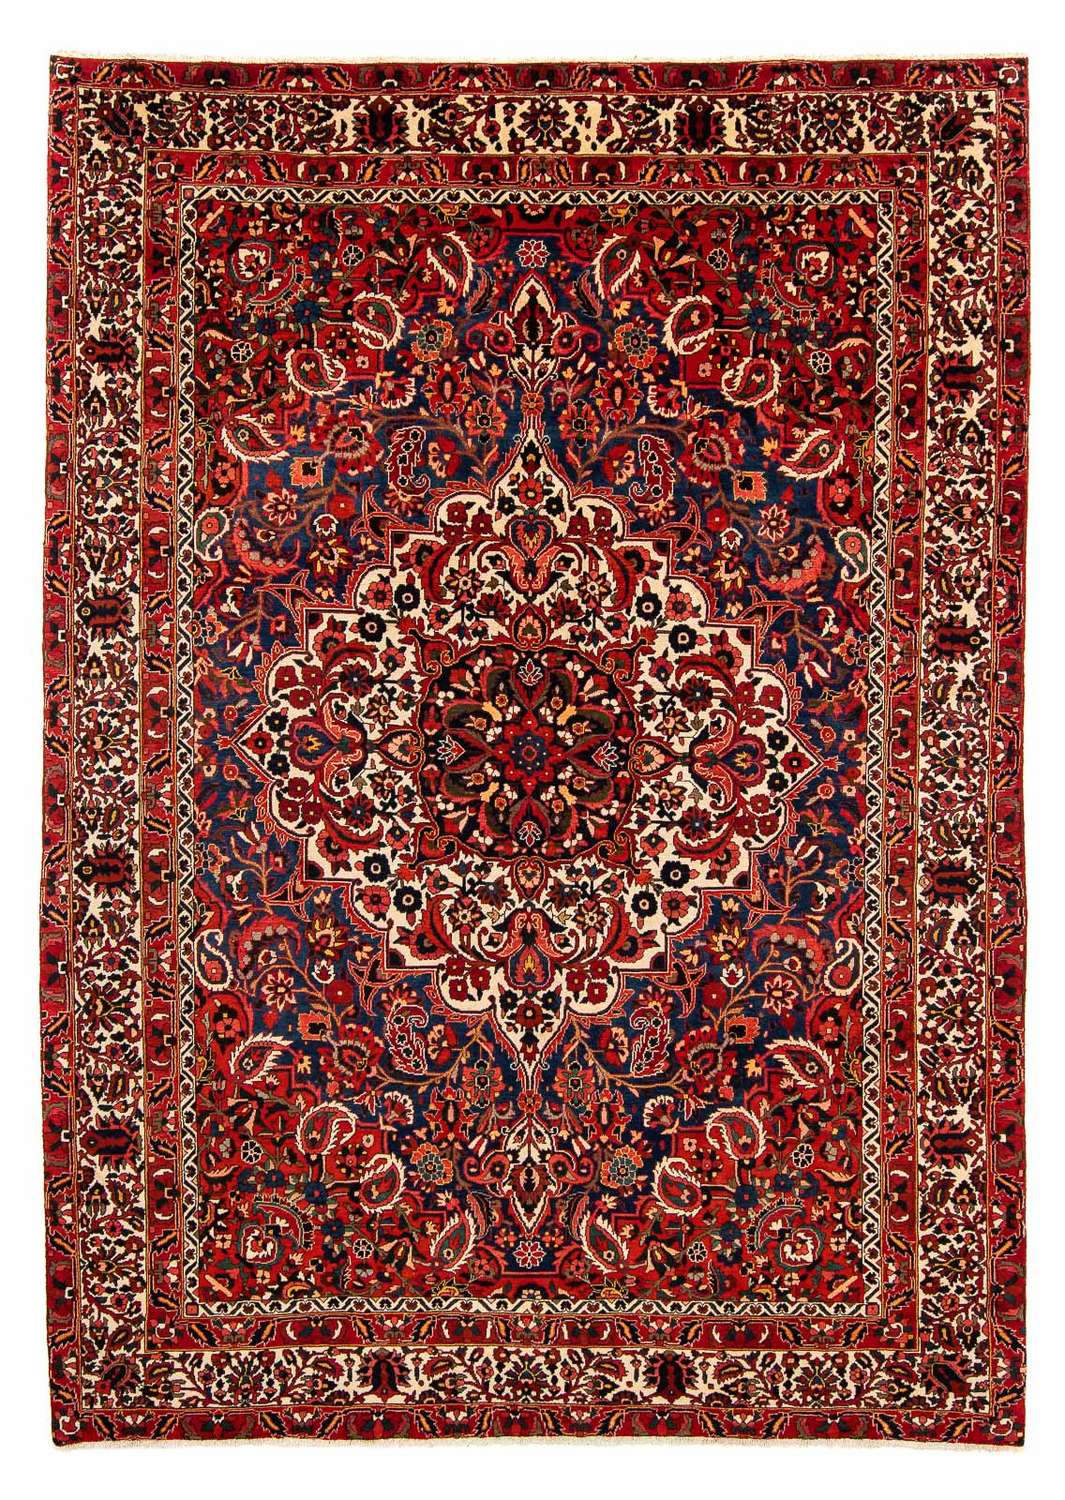 Tapis persan - Nomadic - 375 x 272 cm - rouge foncé